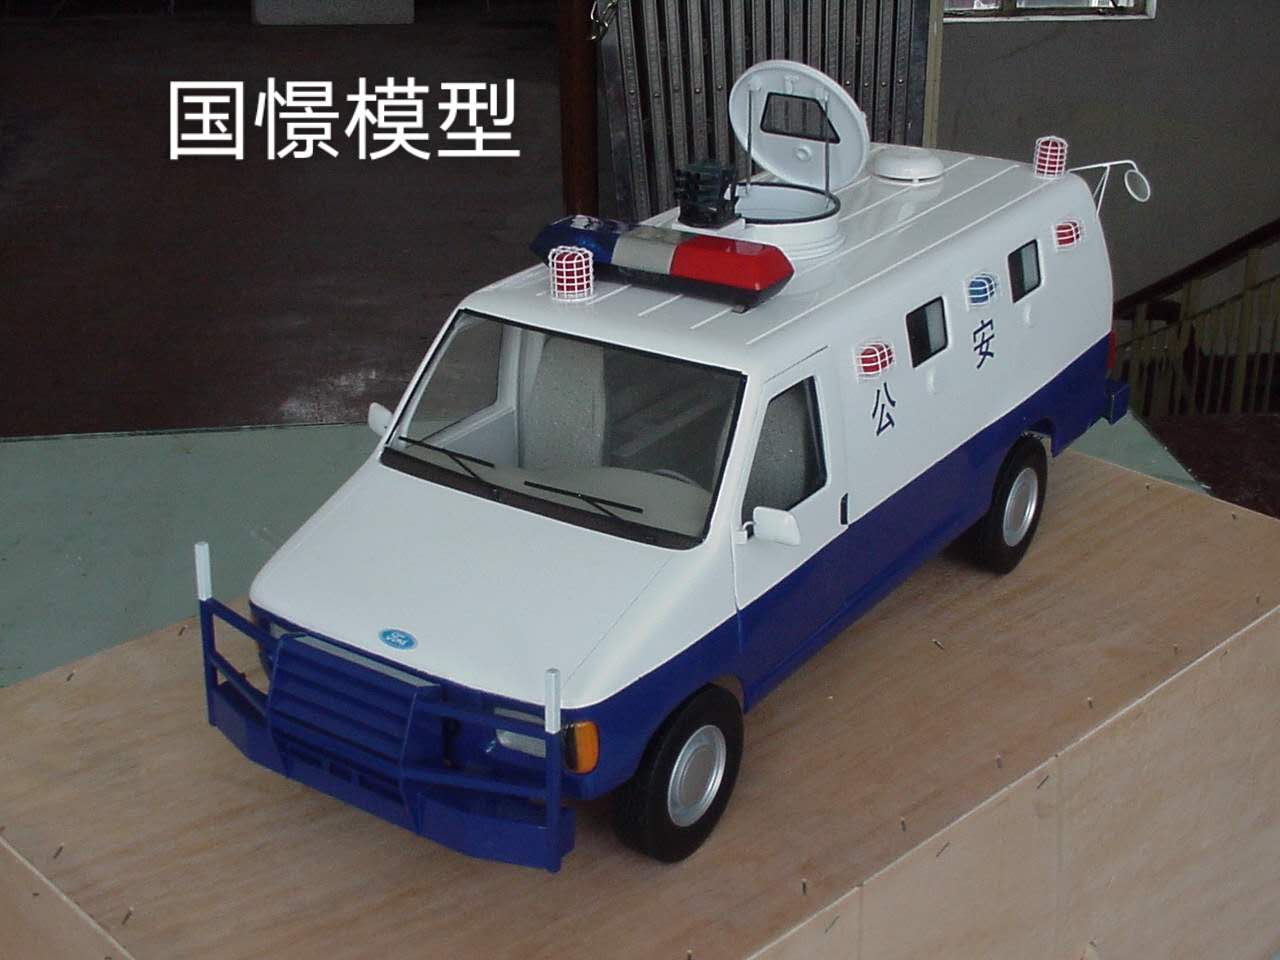 瓮安县车辆模型